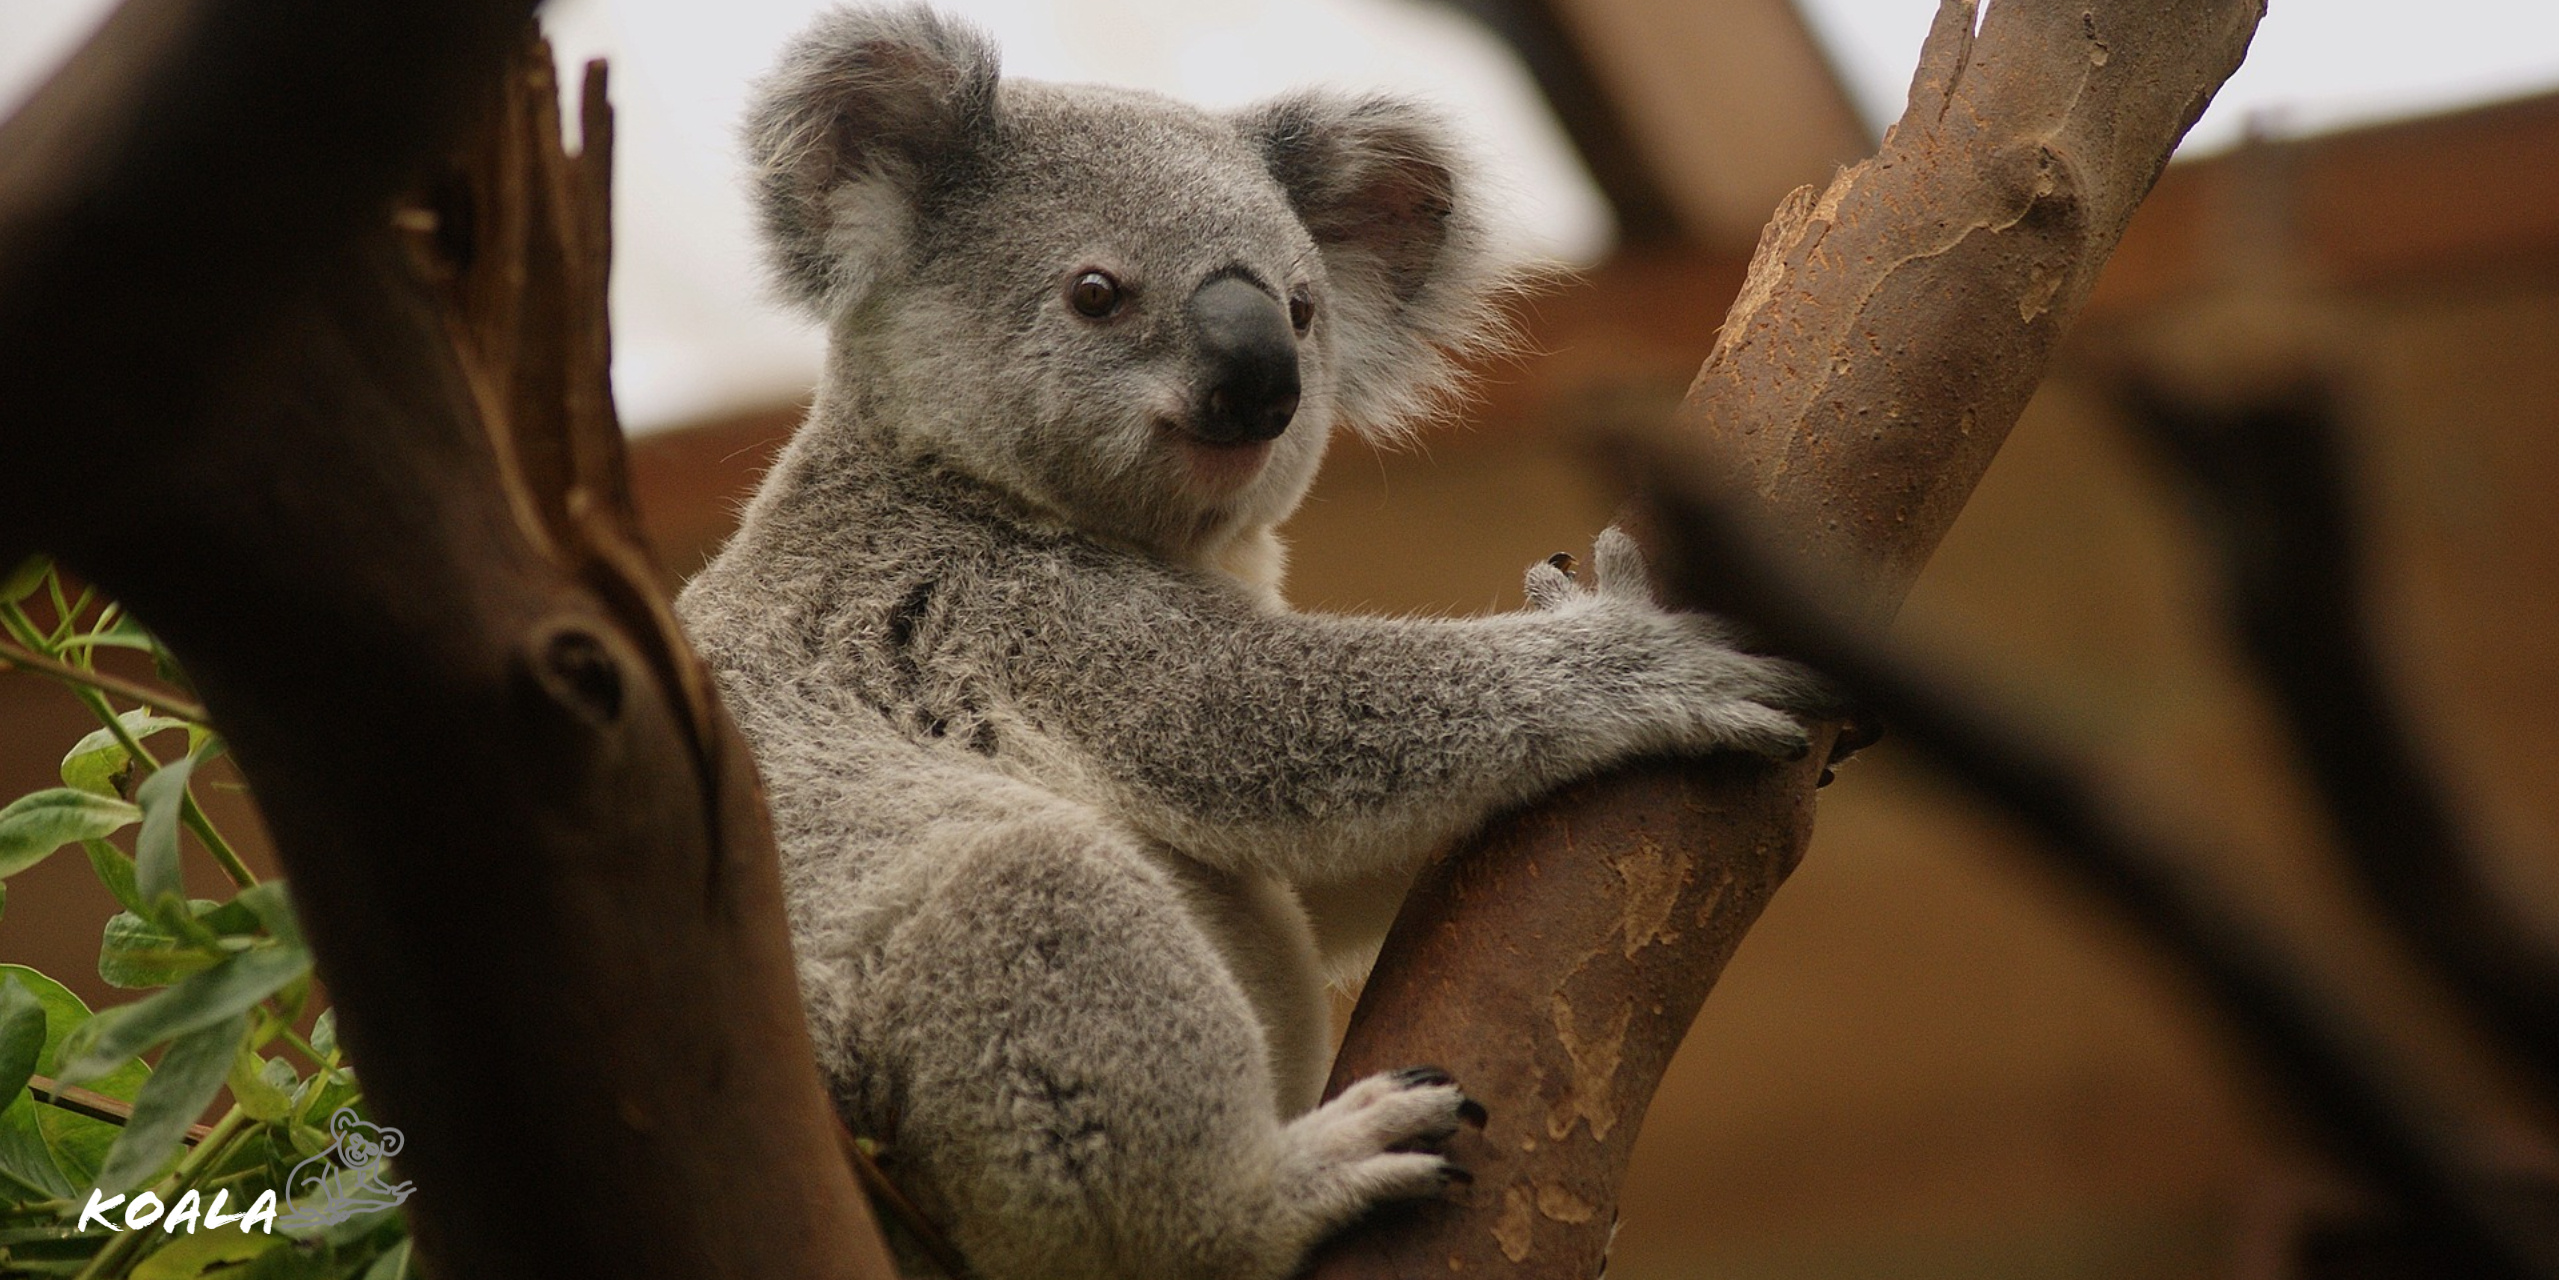 Koala on tree, Koala wildlife, HD wallpaper, Kde store, 2560x1280 Dual Screen Desktop